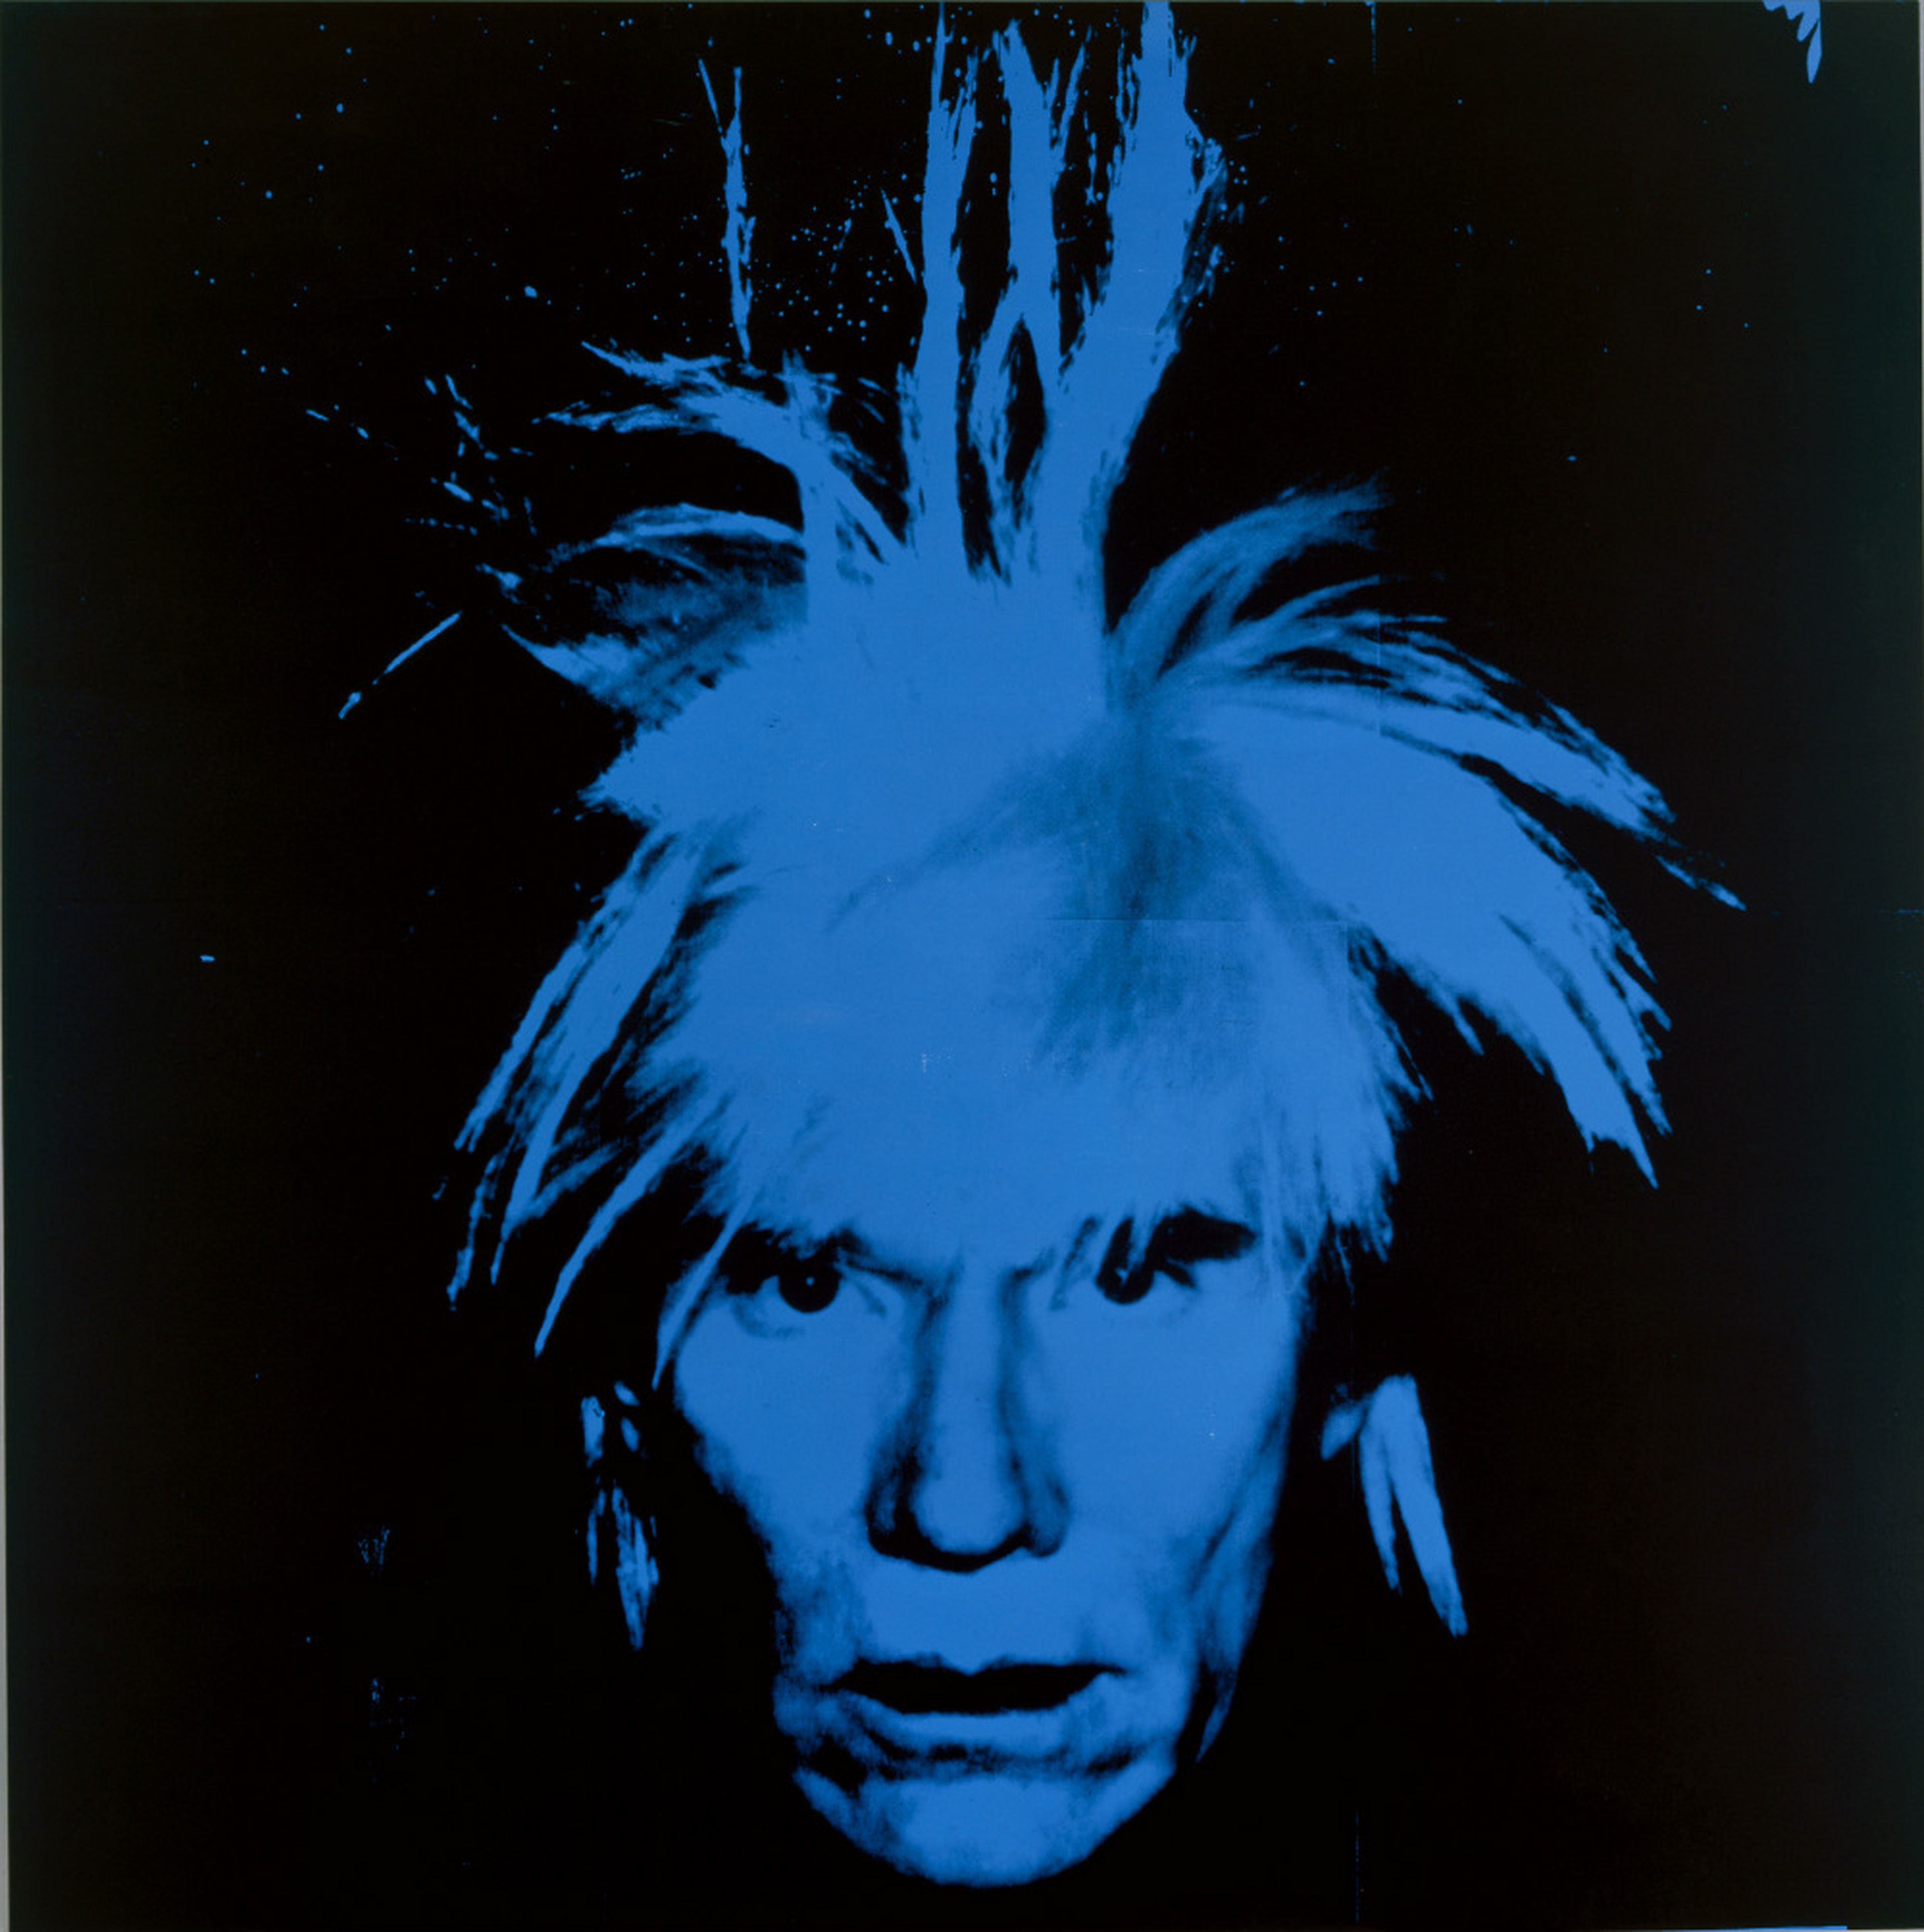 Este autorretrato de Andy Warhol en 1986 muestra una imagen igual de icónica que su arte.